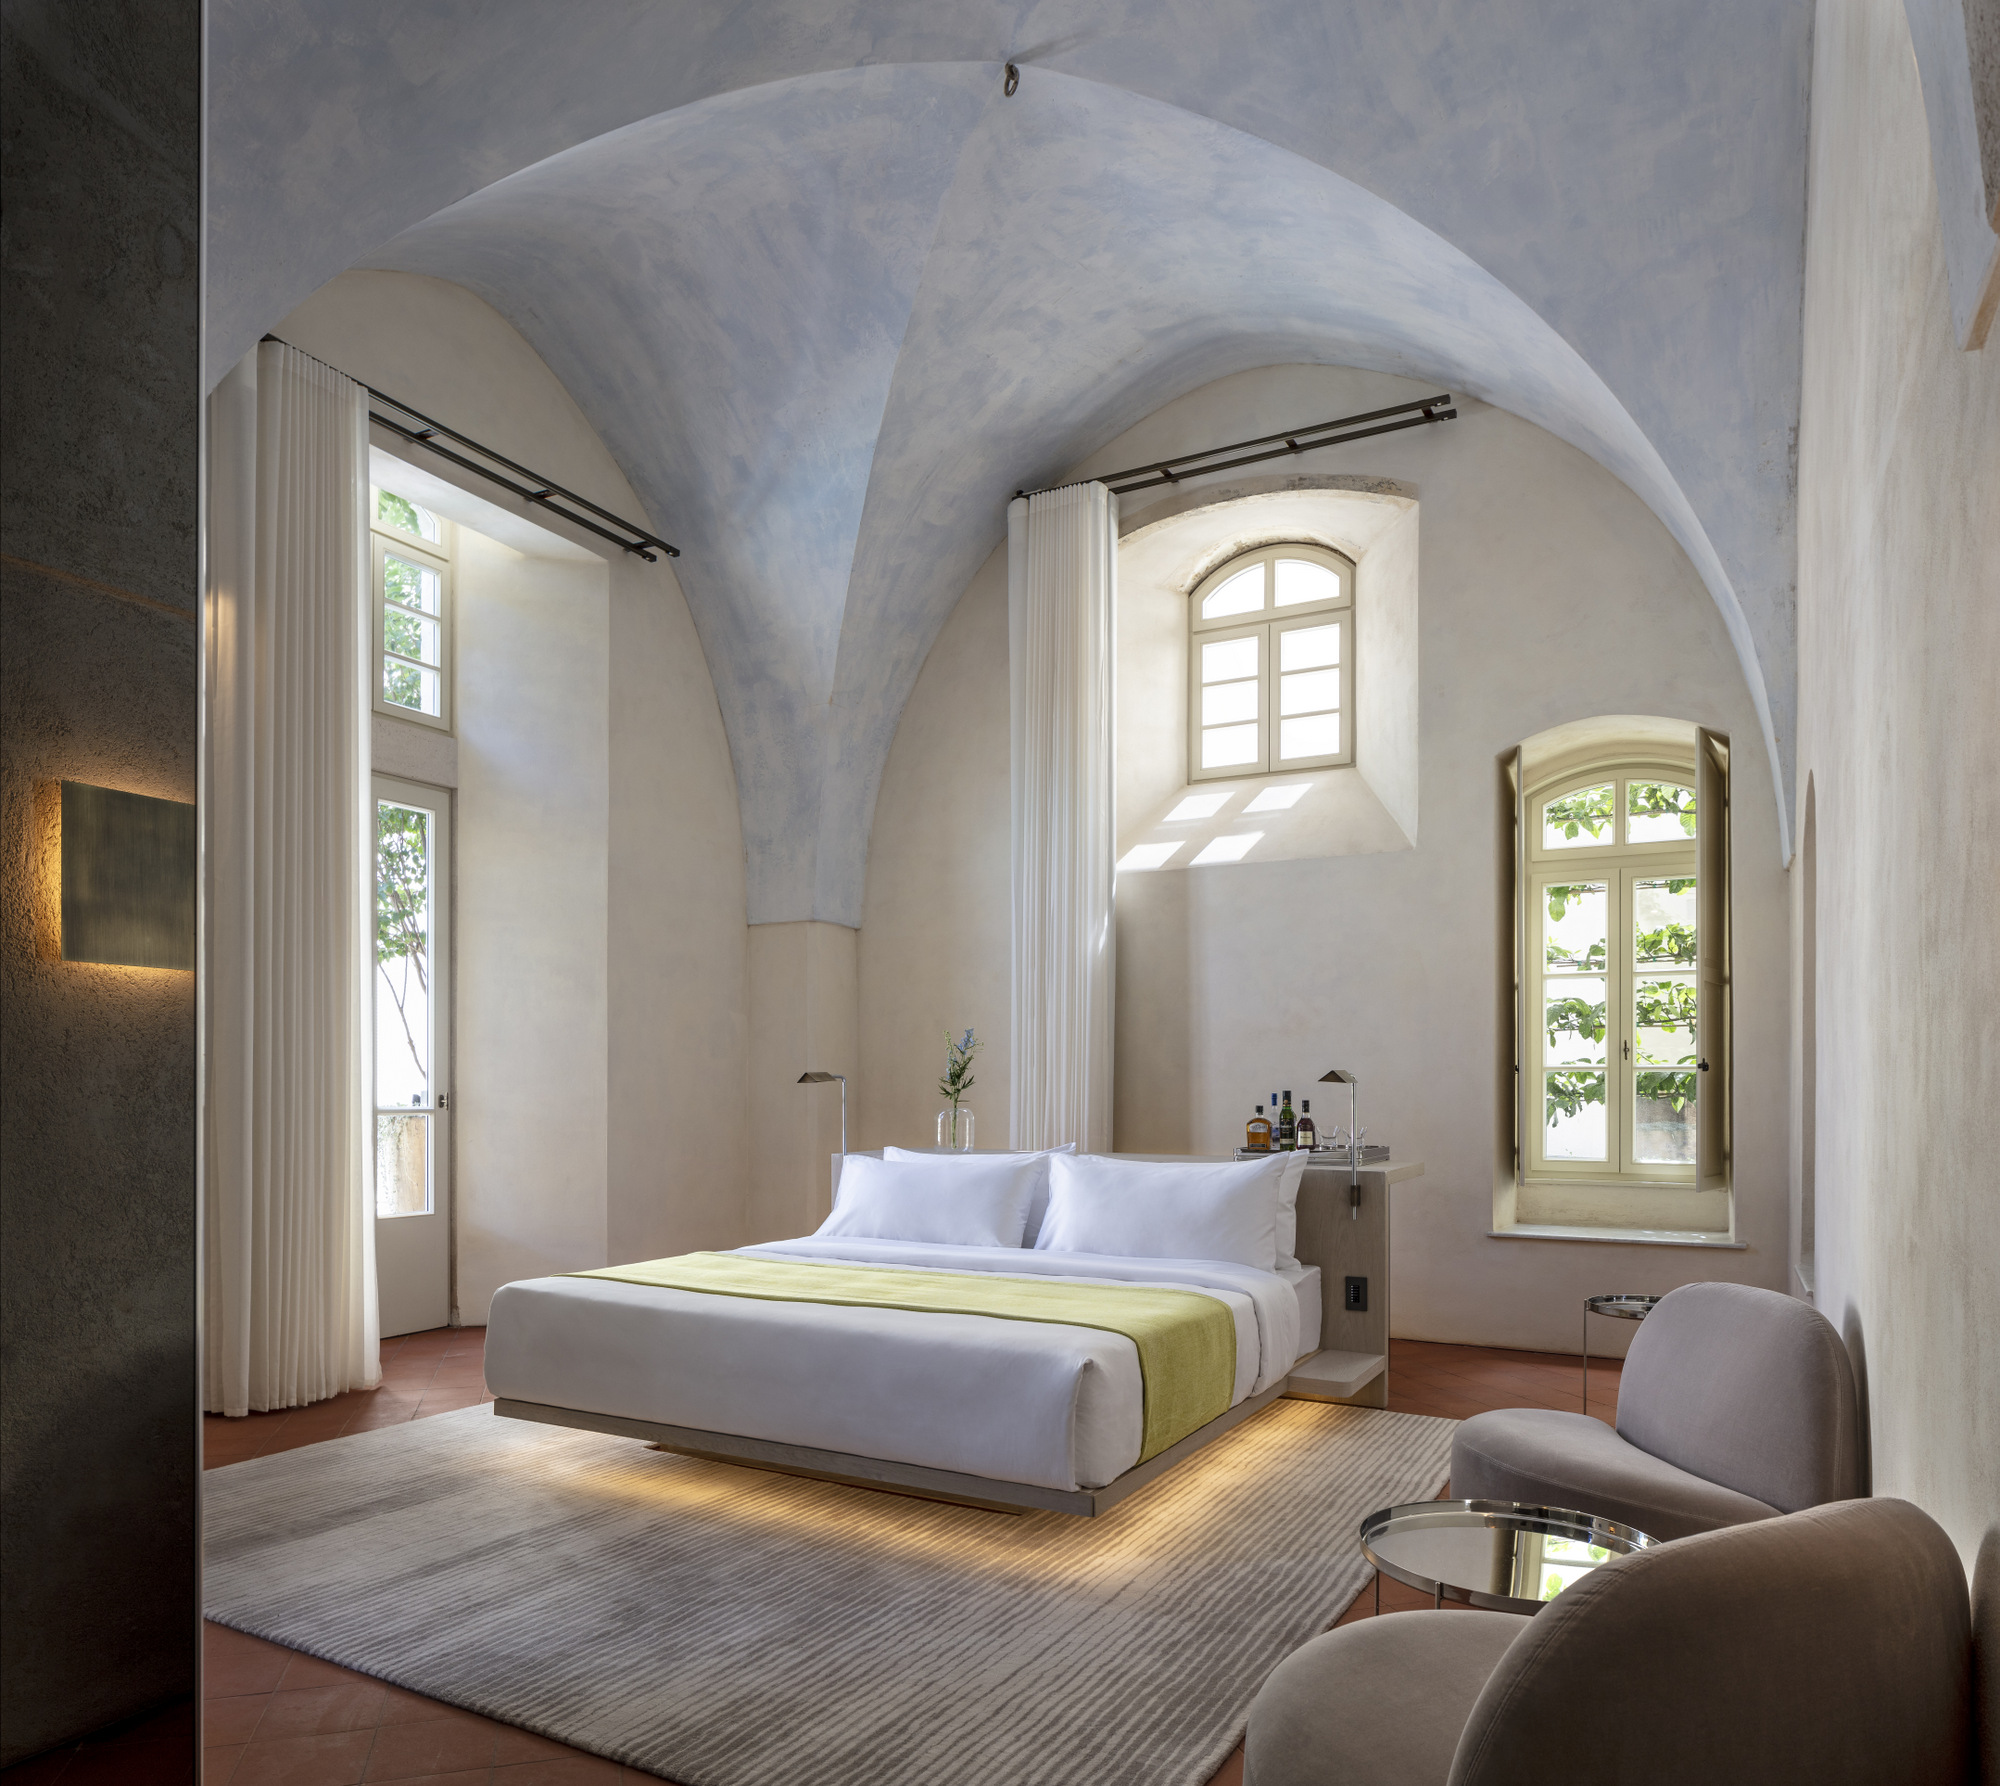 图片[9]|特拉维夫雅法酒店|ART-Arrakis | 建筑室内设计的创新与灵感